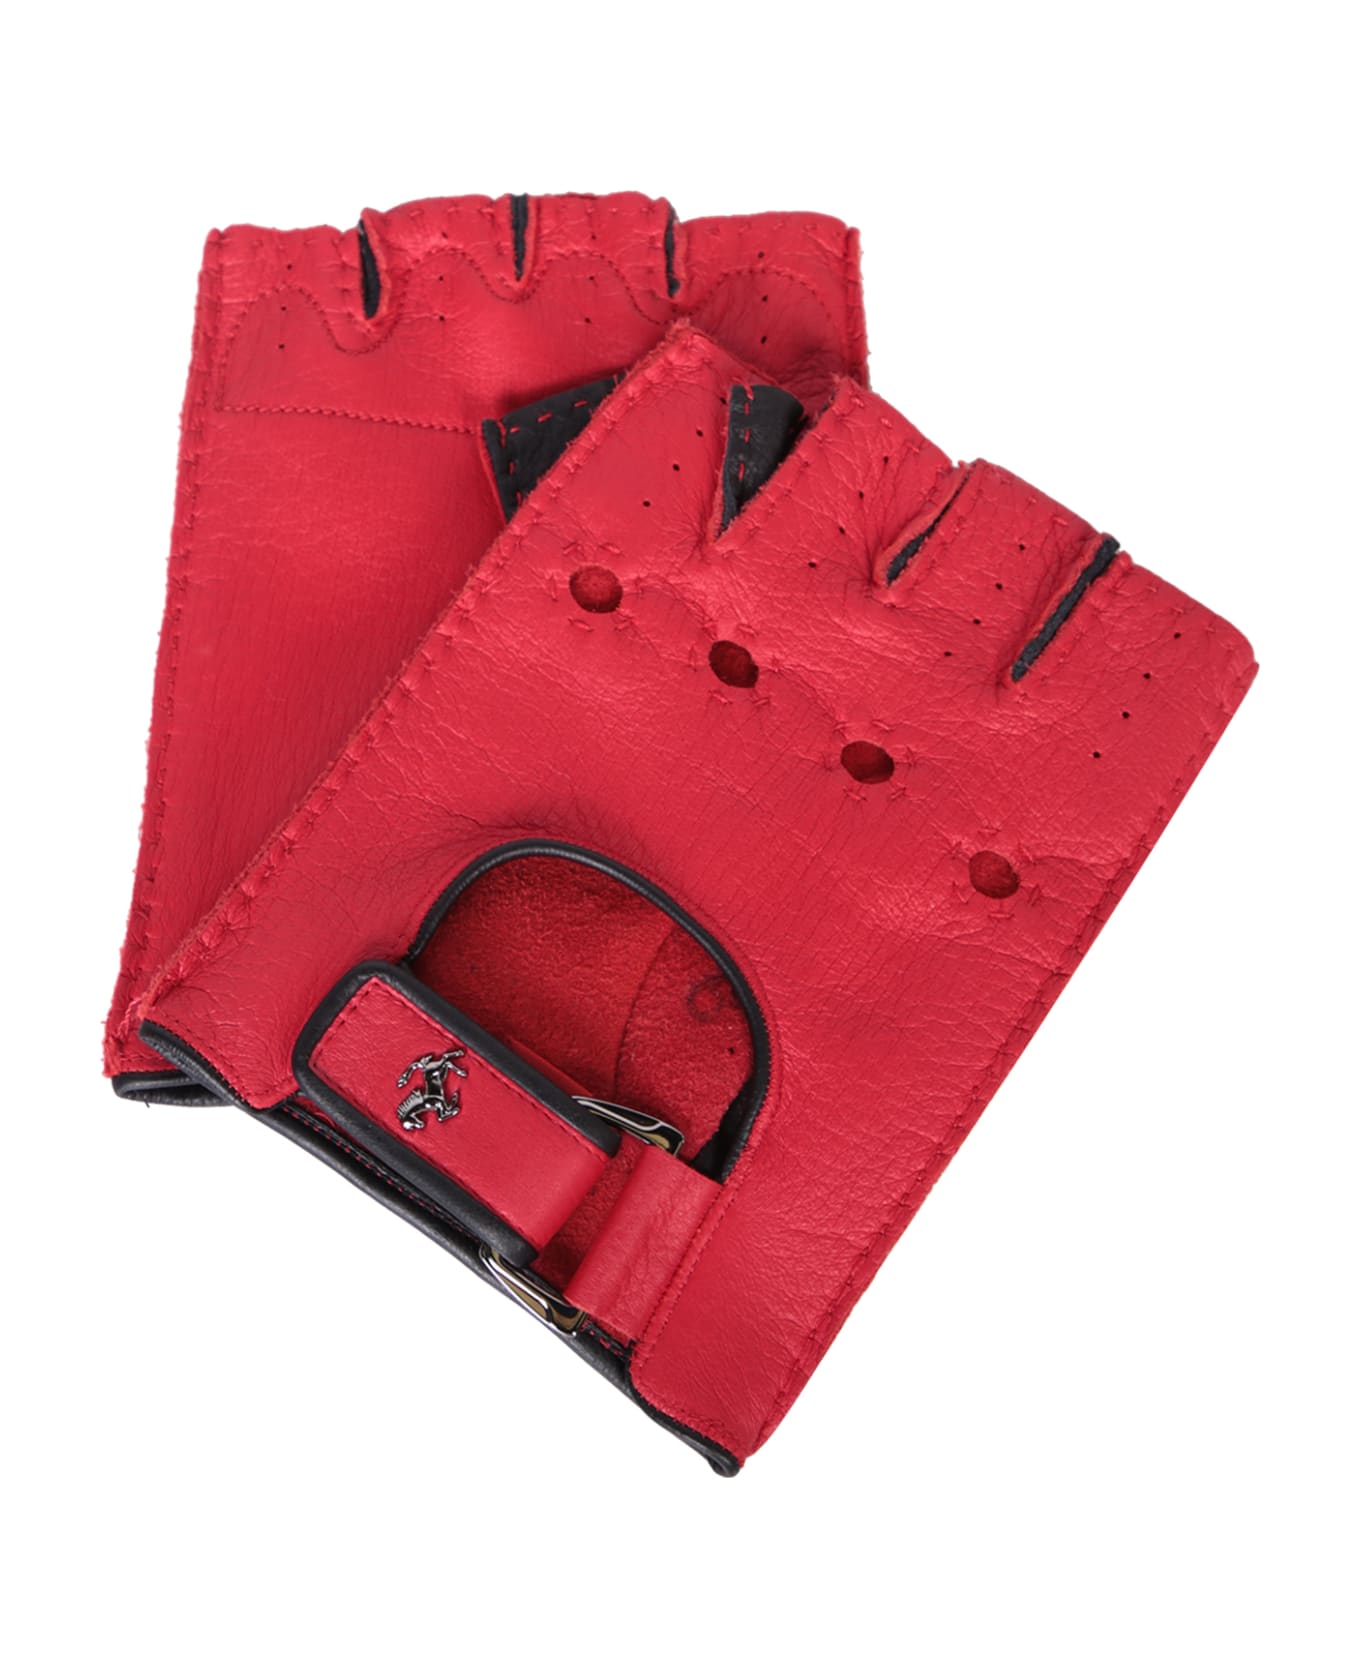 Ferrari Red Leather Fingerless Gloves - Red